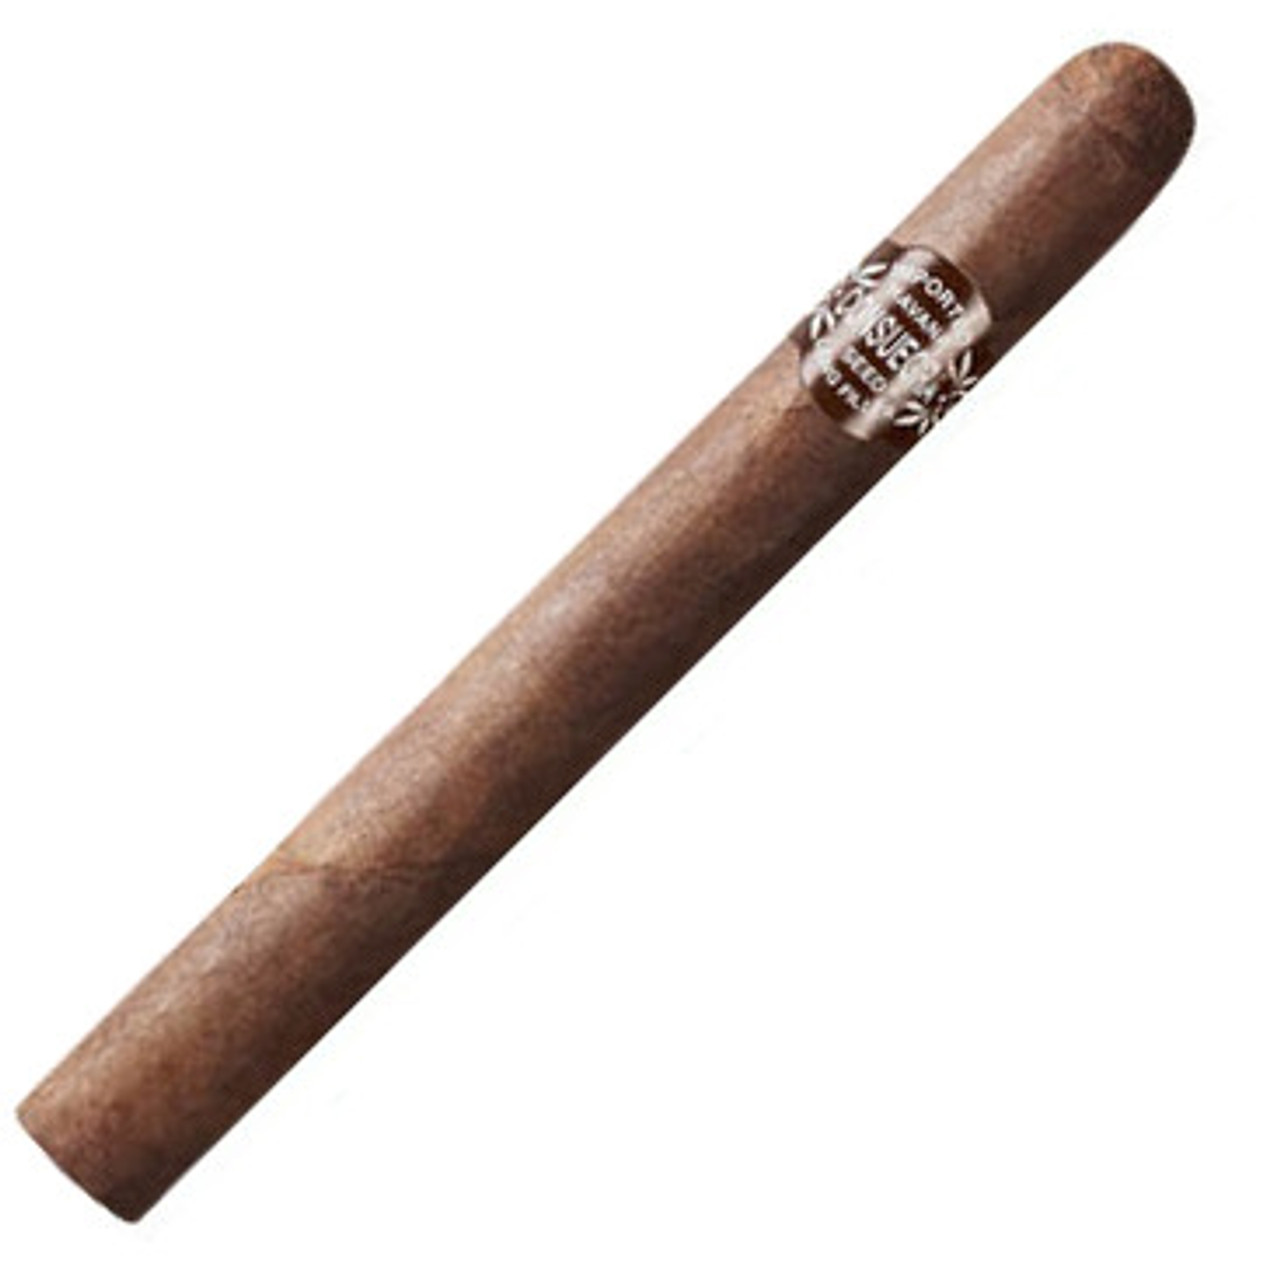 Consuegra Churchill #15 Maduro Cigars - 6.25 x 45 (Box of 25)